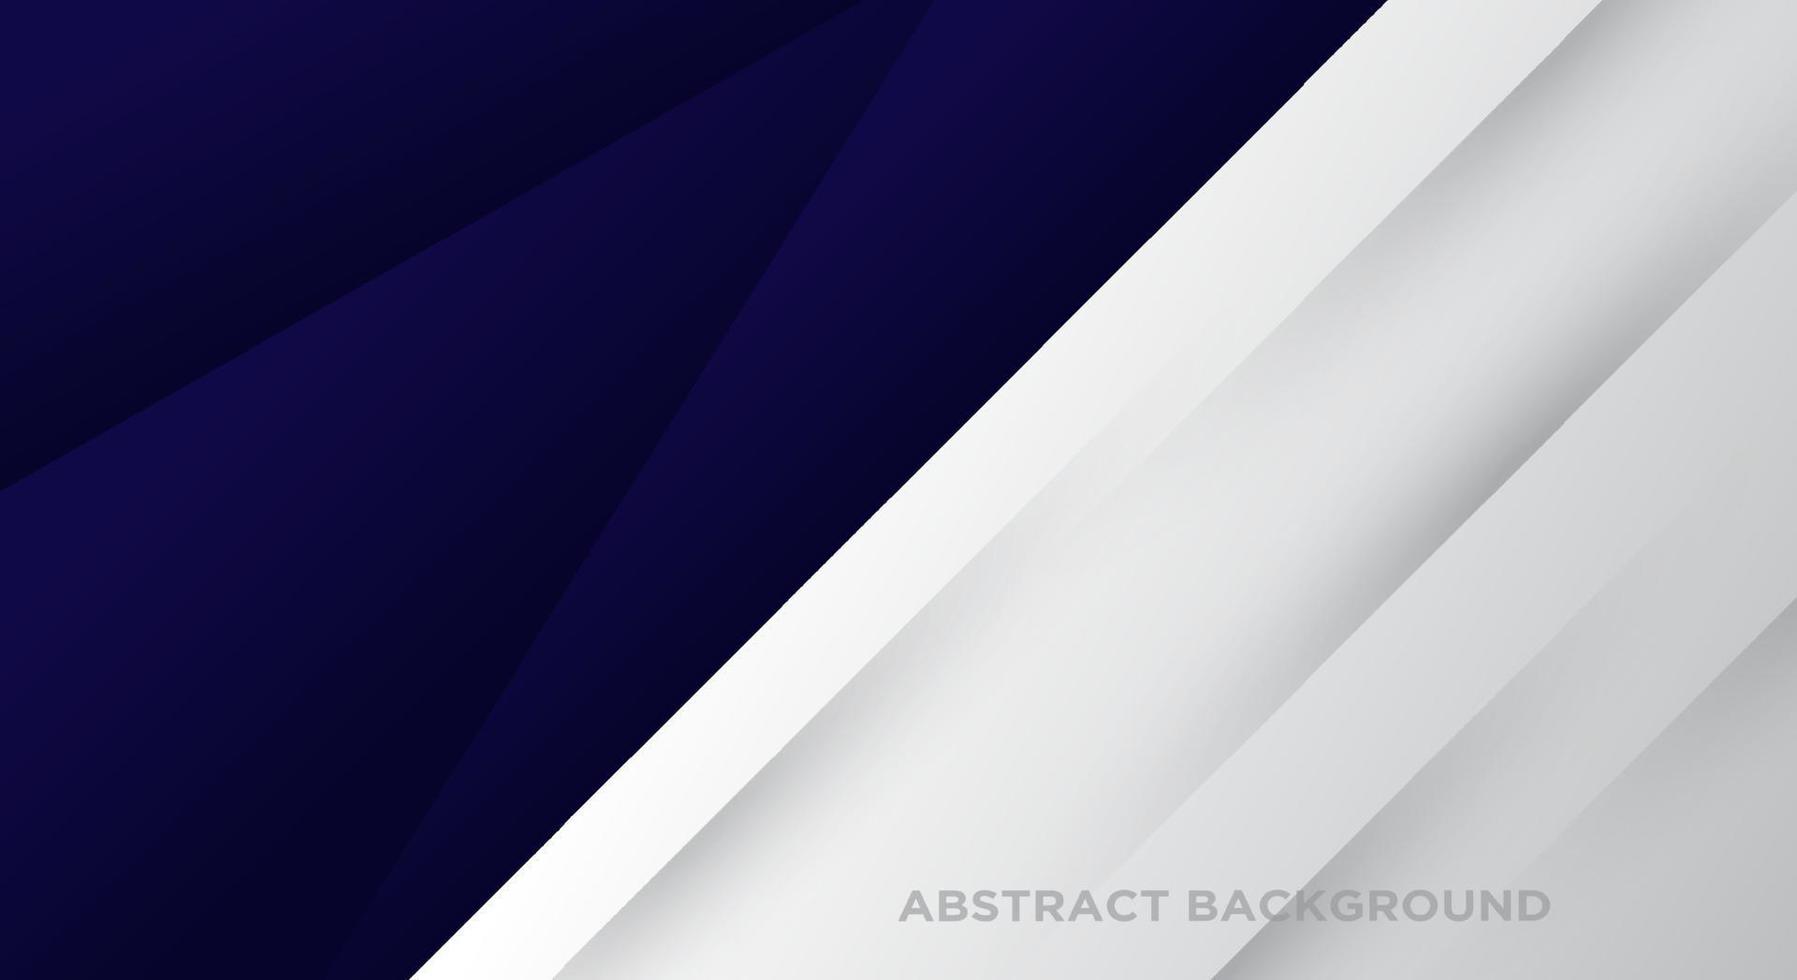 gráfico futurista moderno de fondo abstracto. fondo azul oscuro con línea. eps 10 vector